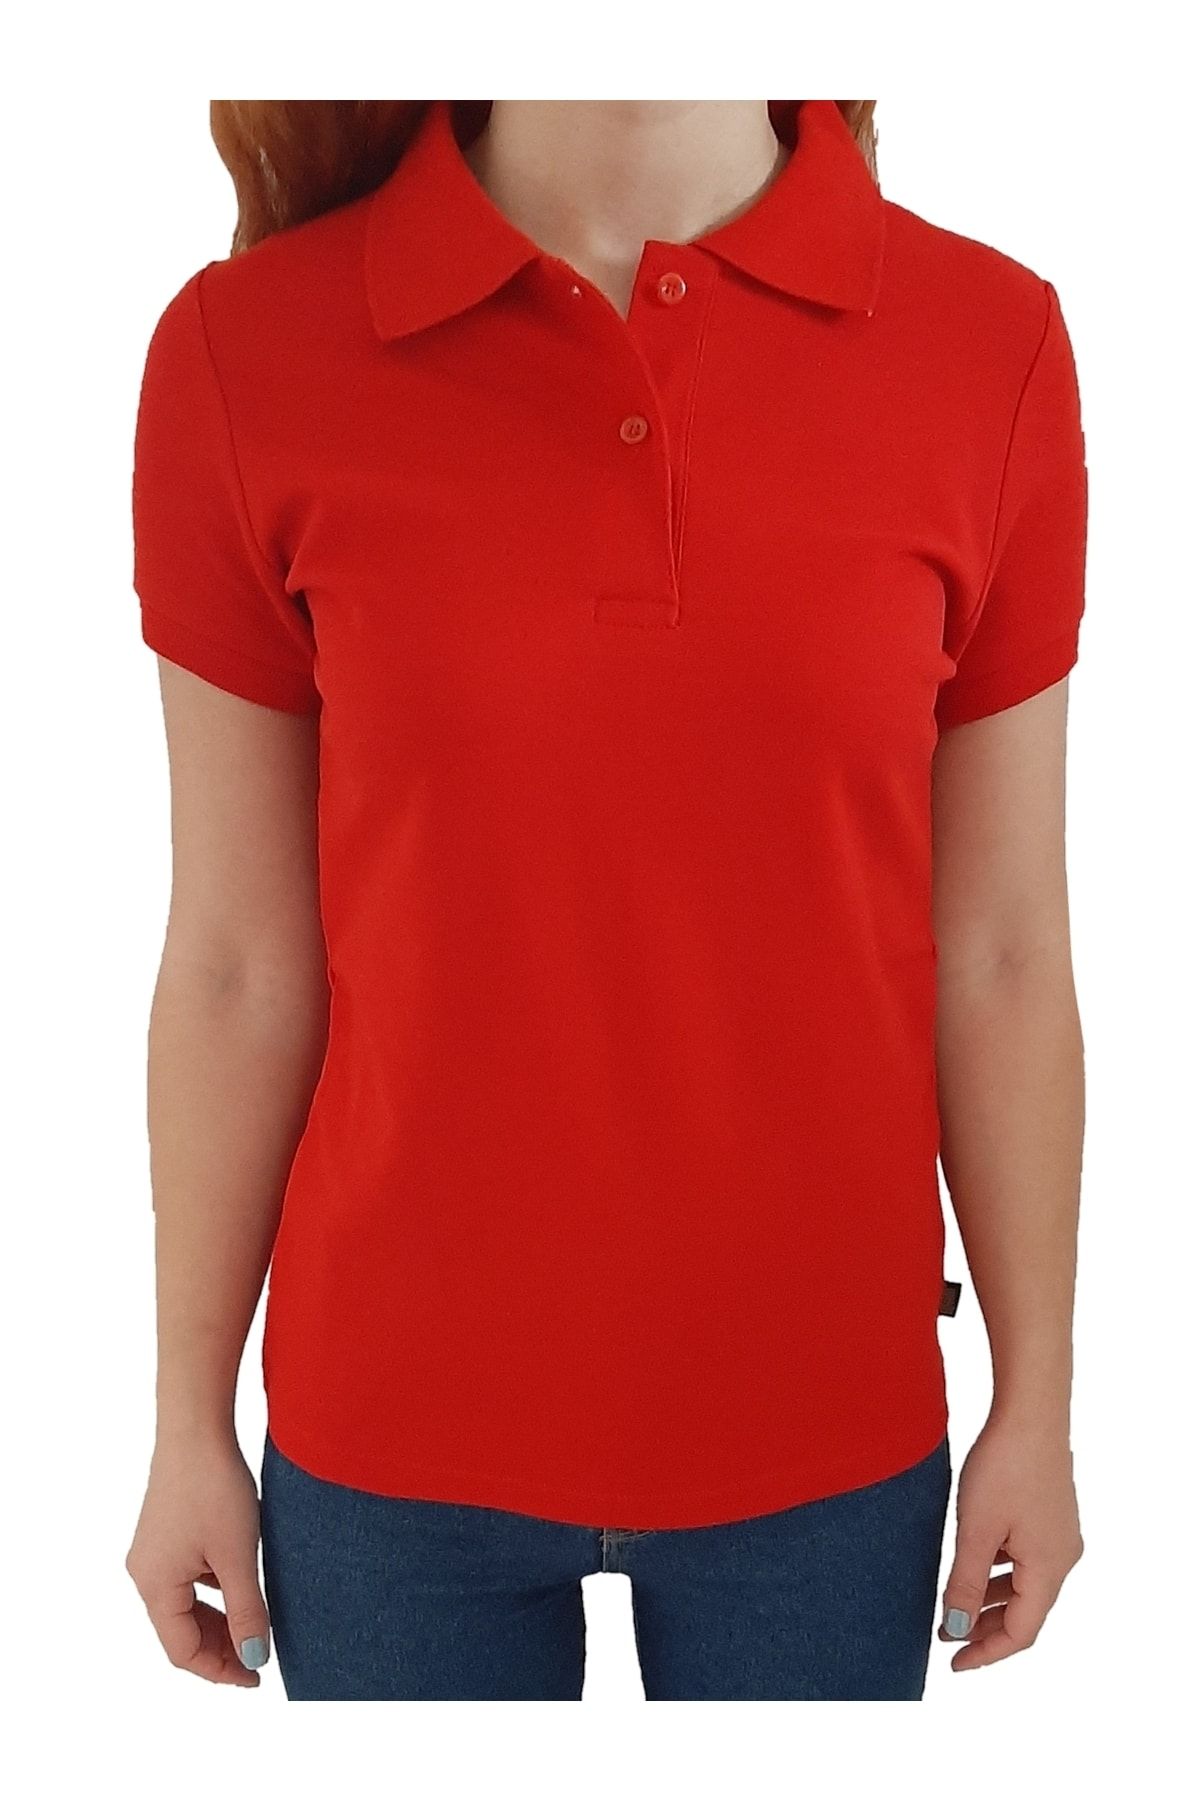 uniformax Kırmızı Kadın Polo Yaka Tişört %100 Pamuk 10 Farklı Renk